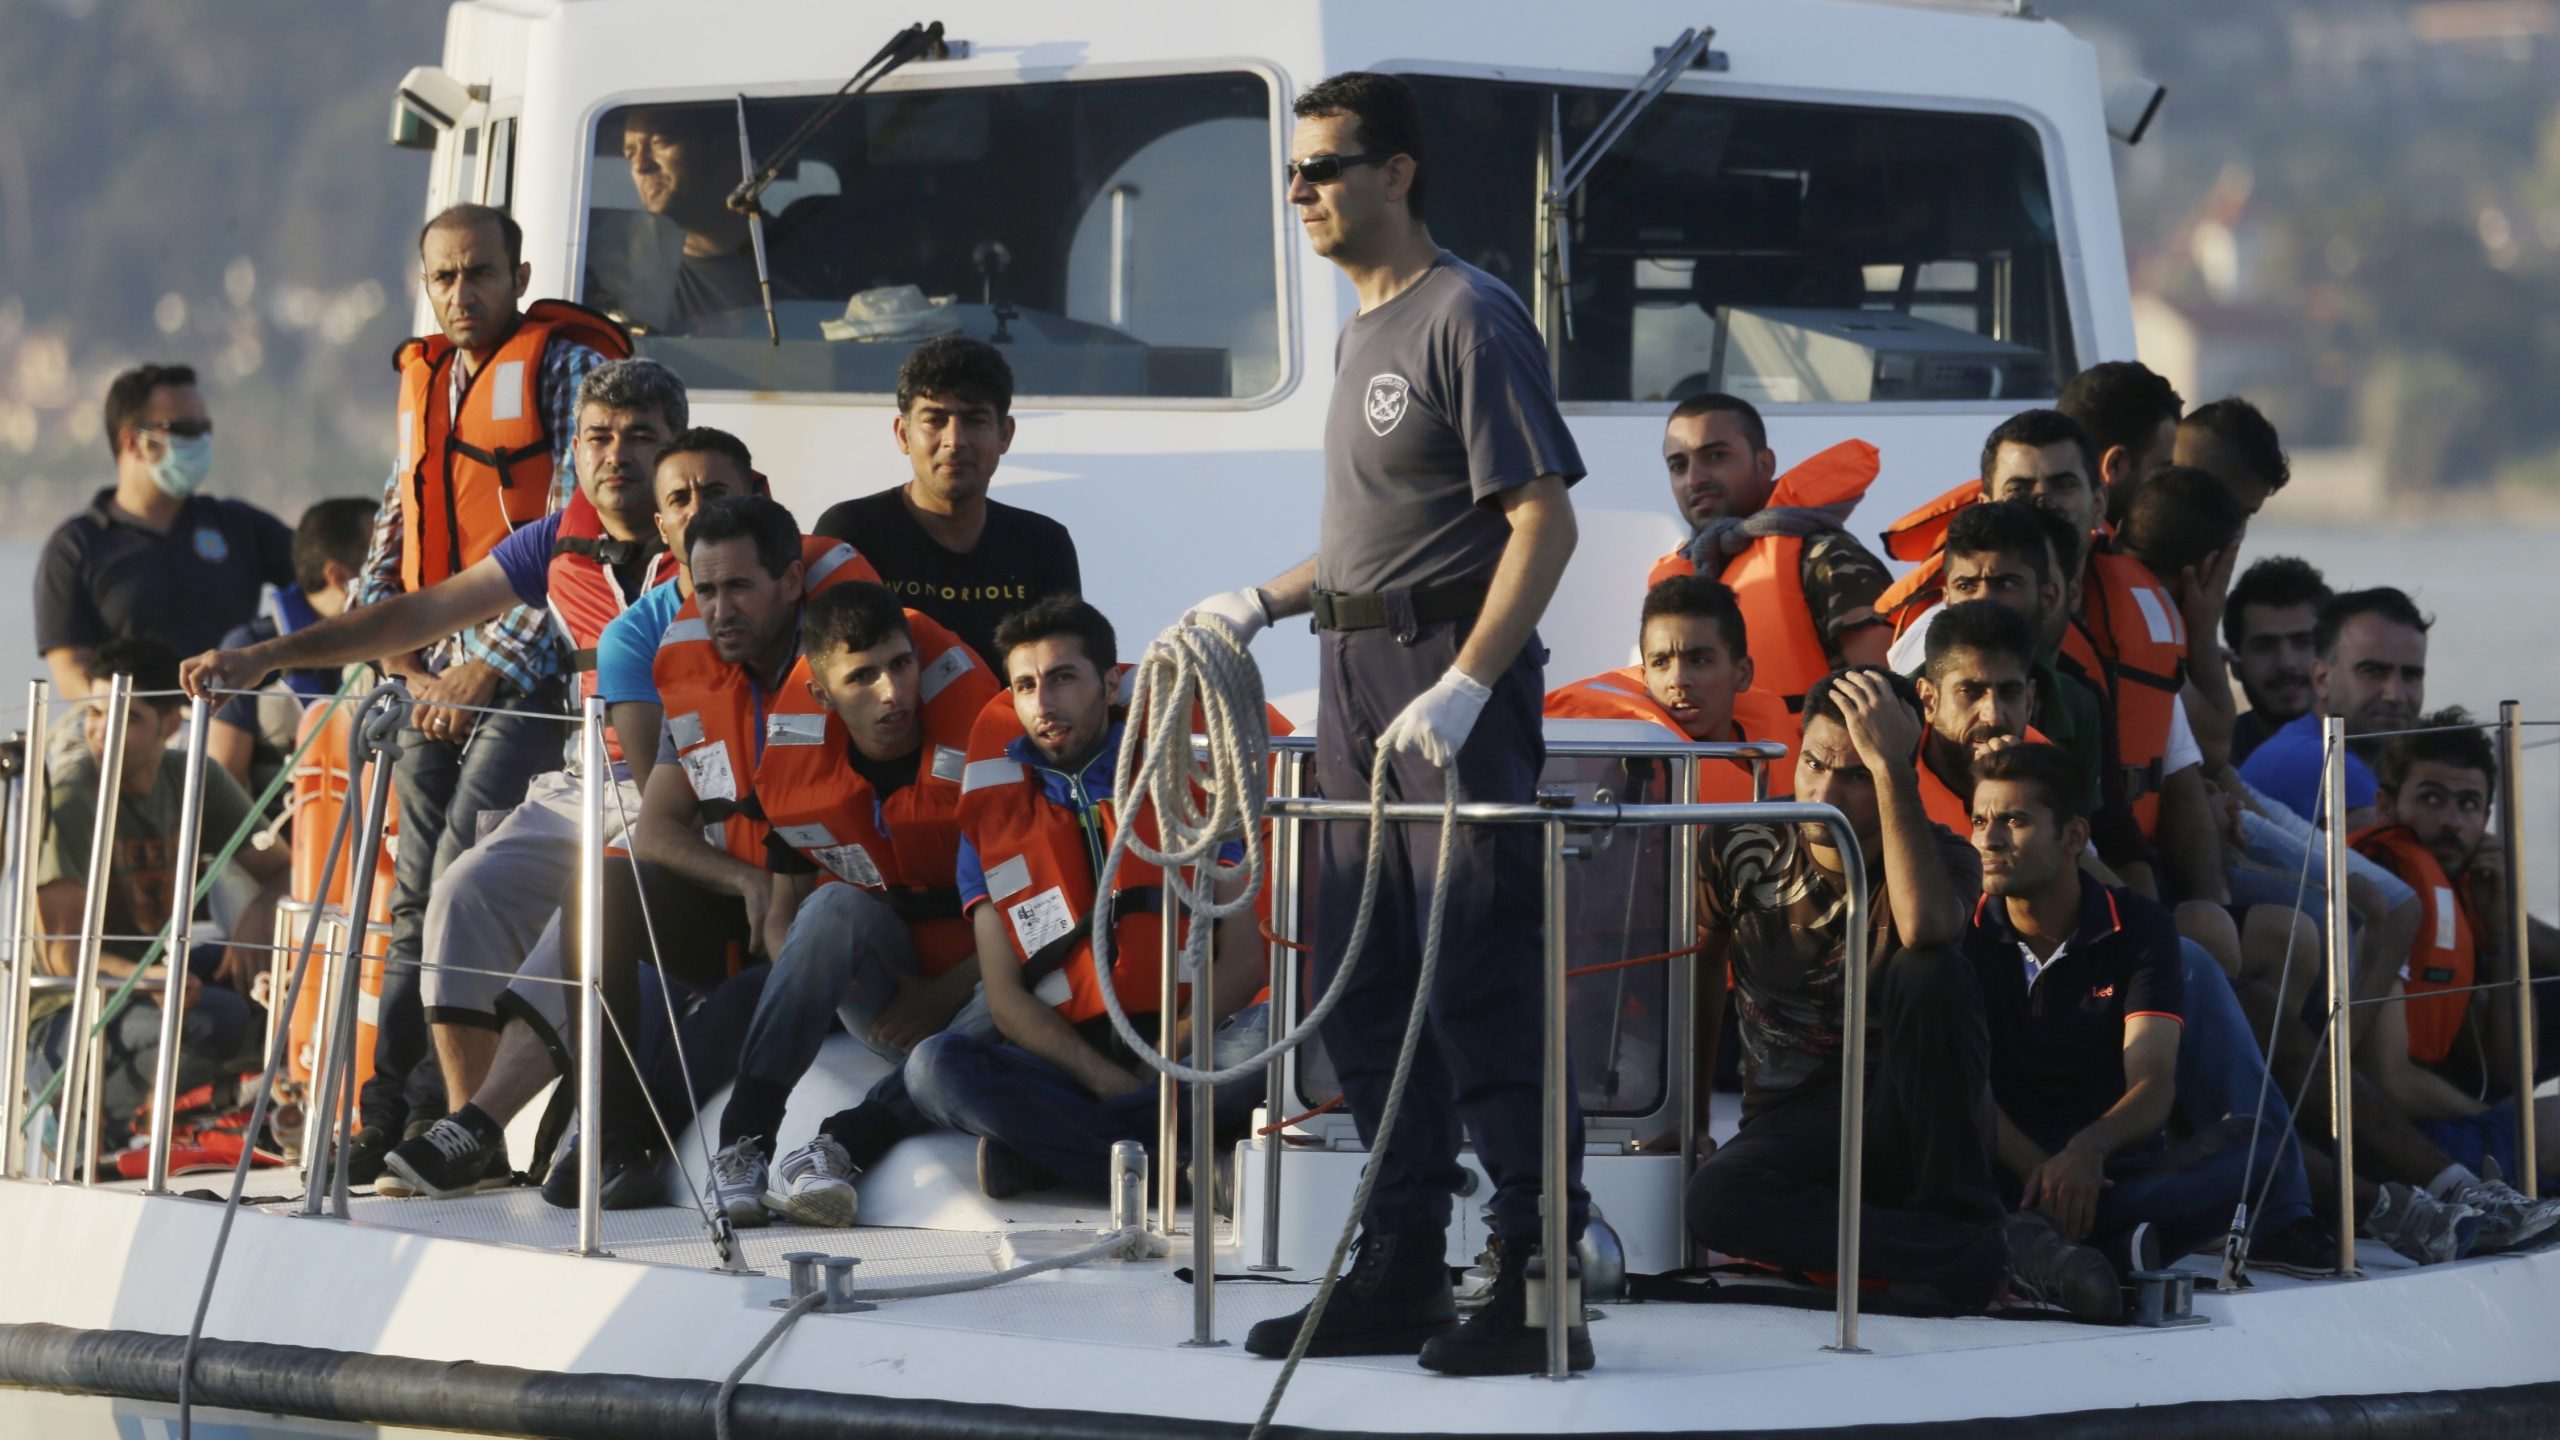 Μεταναστευτικό: Η Ιταλία  δείχνει το δρόμο – Η Ελλάδα στην απομόνωση με εκατοντάδες χιλιάδες μετανάστες